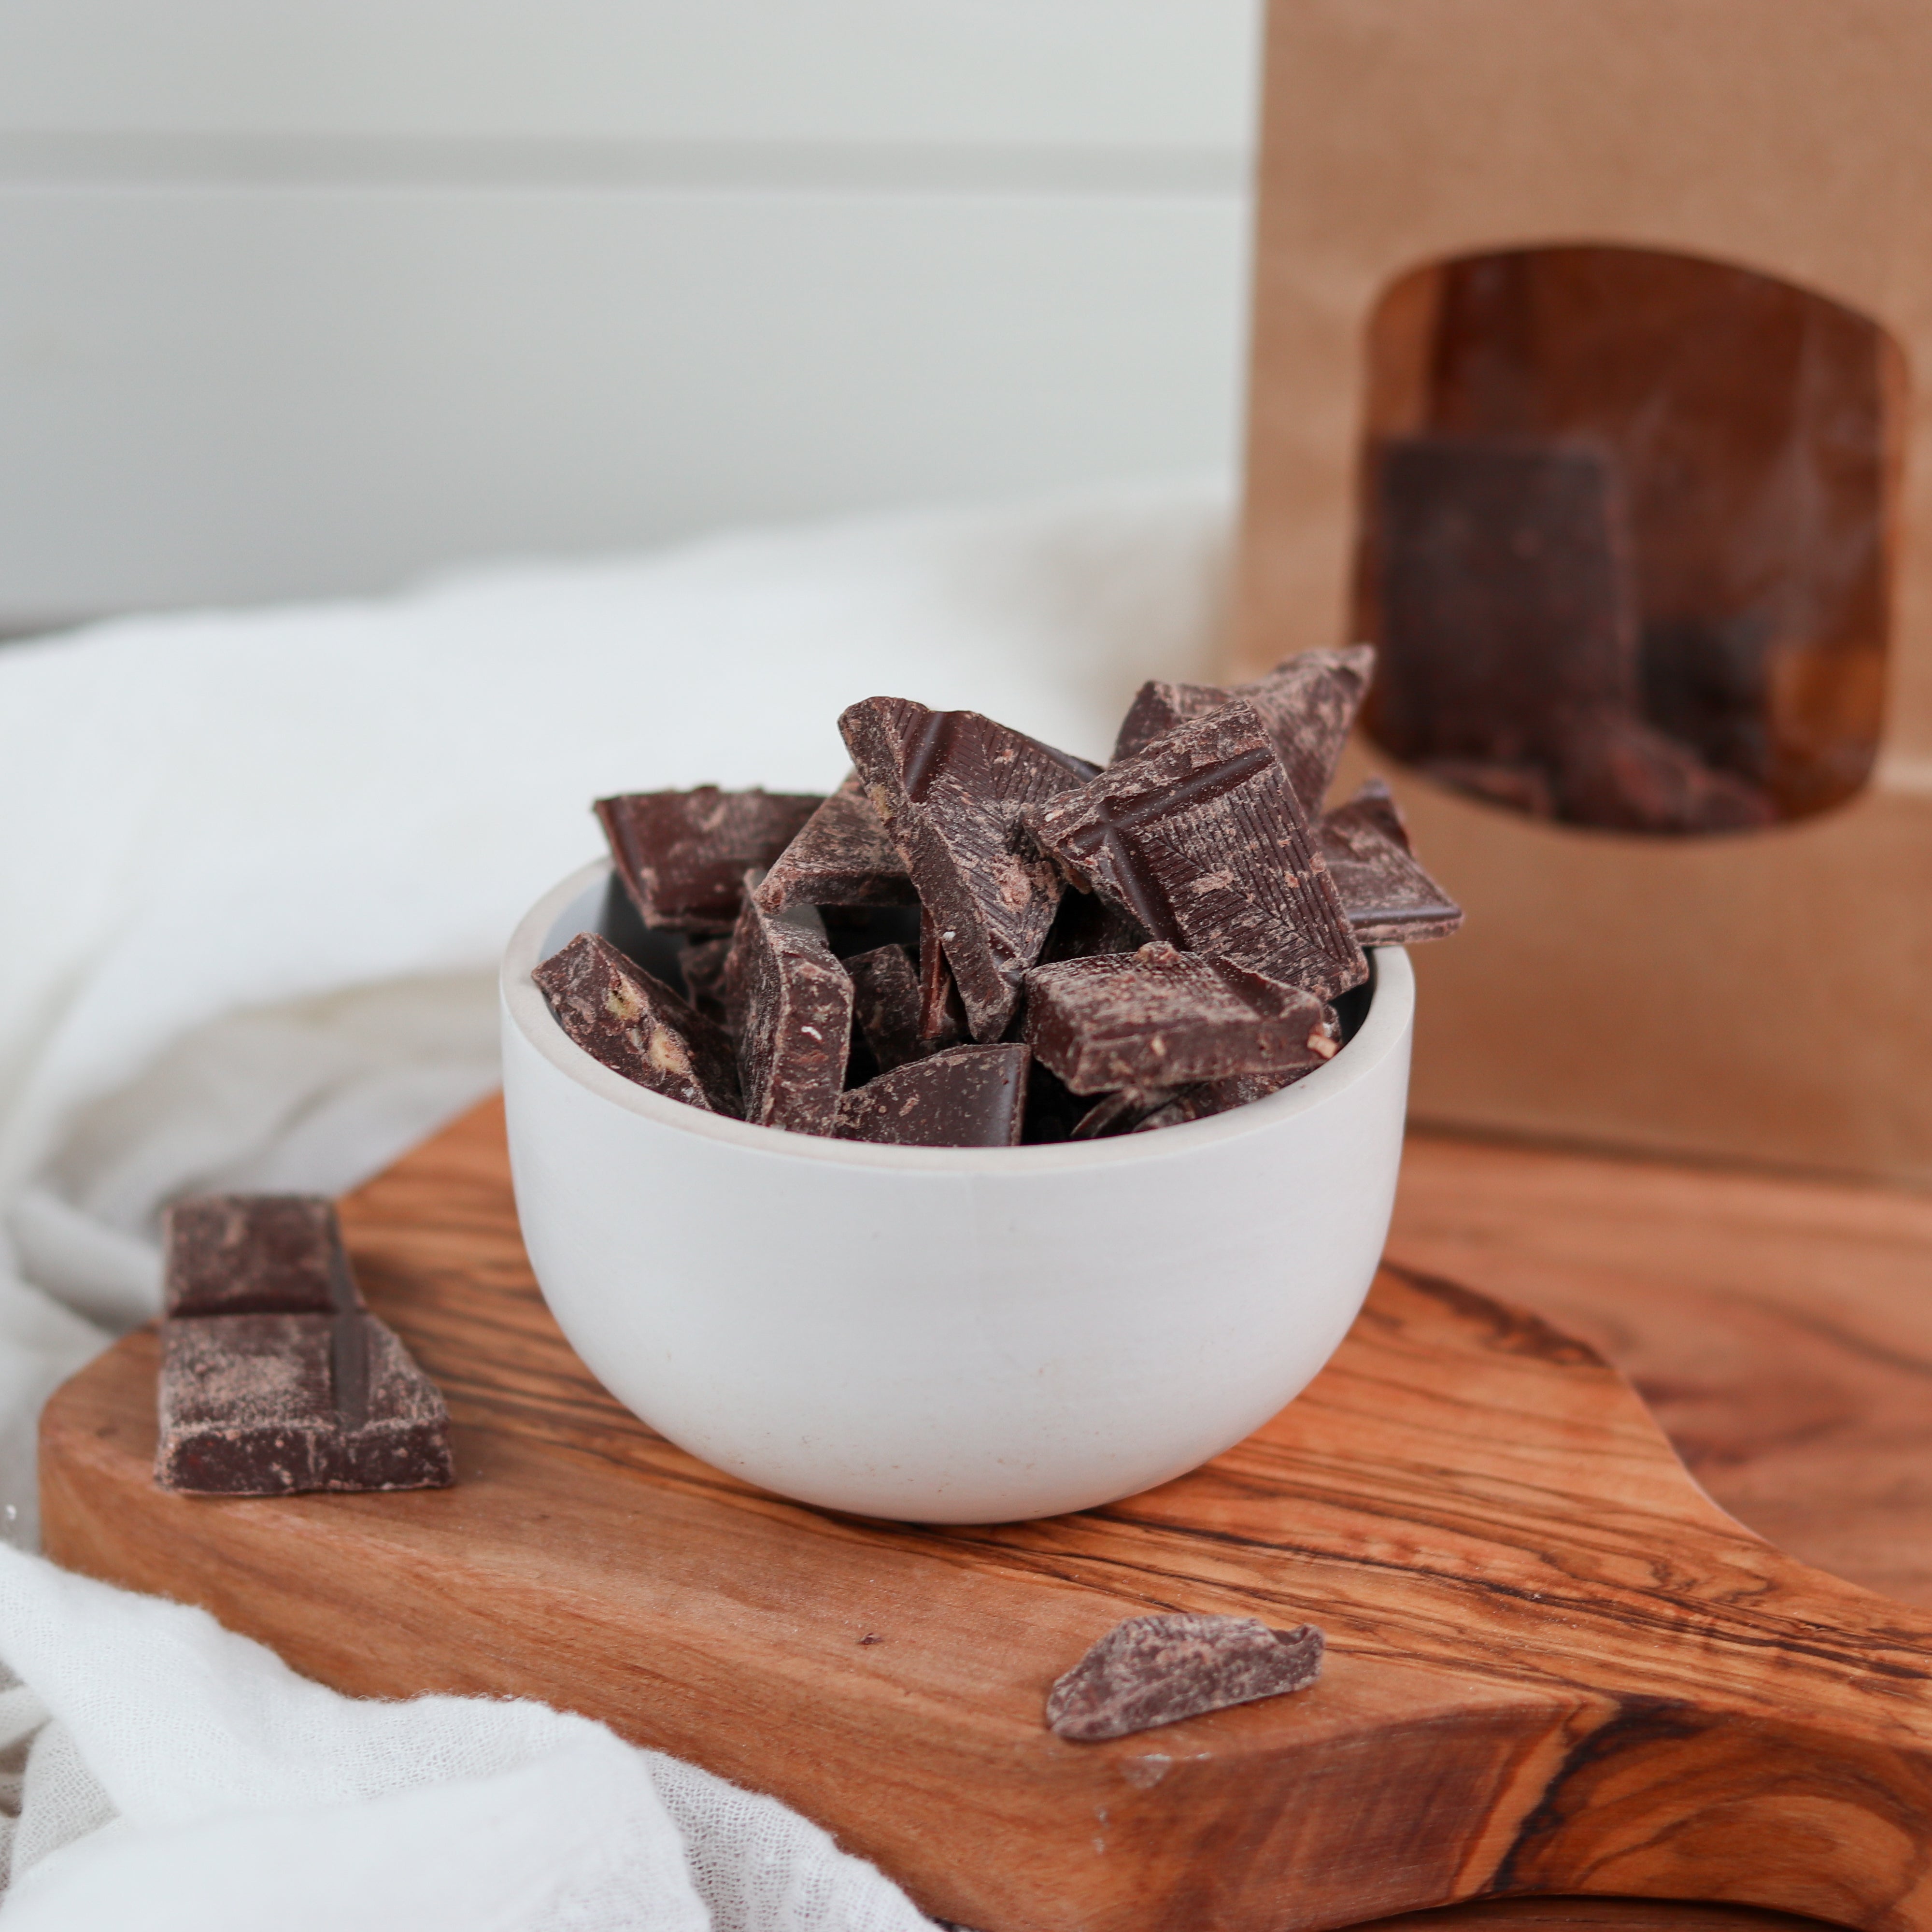 Bio Schokolade | Jackfrucht-Kokos | 62% Kakao | vegan